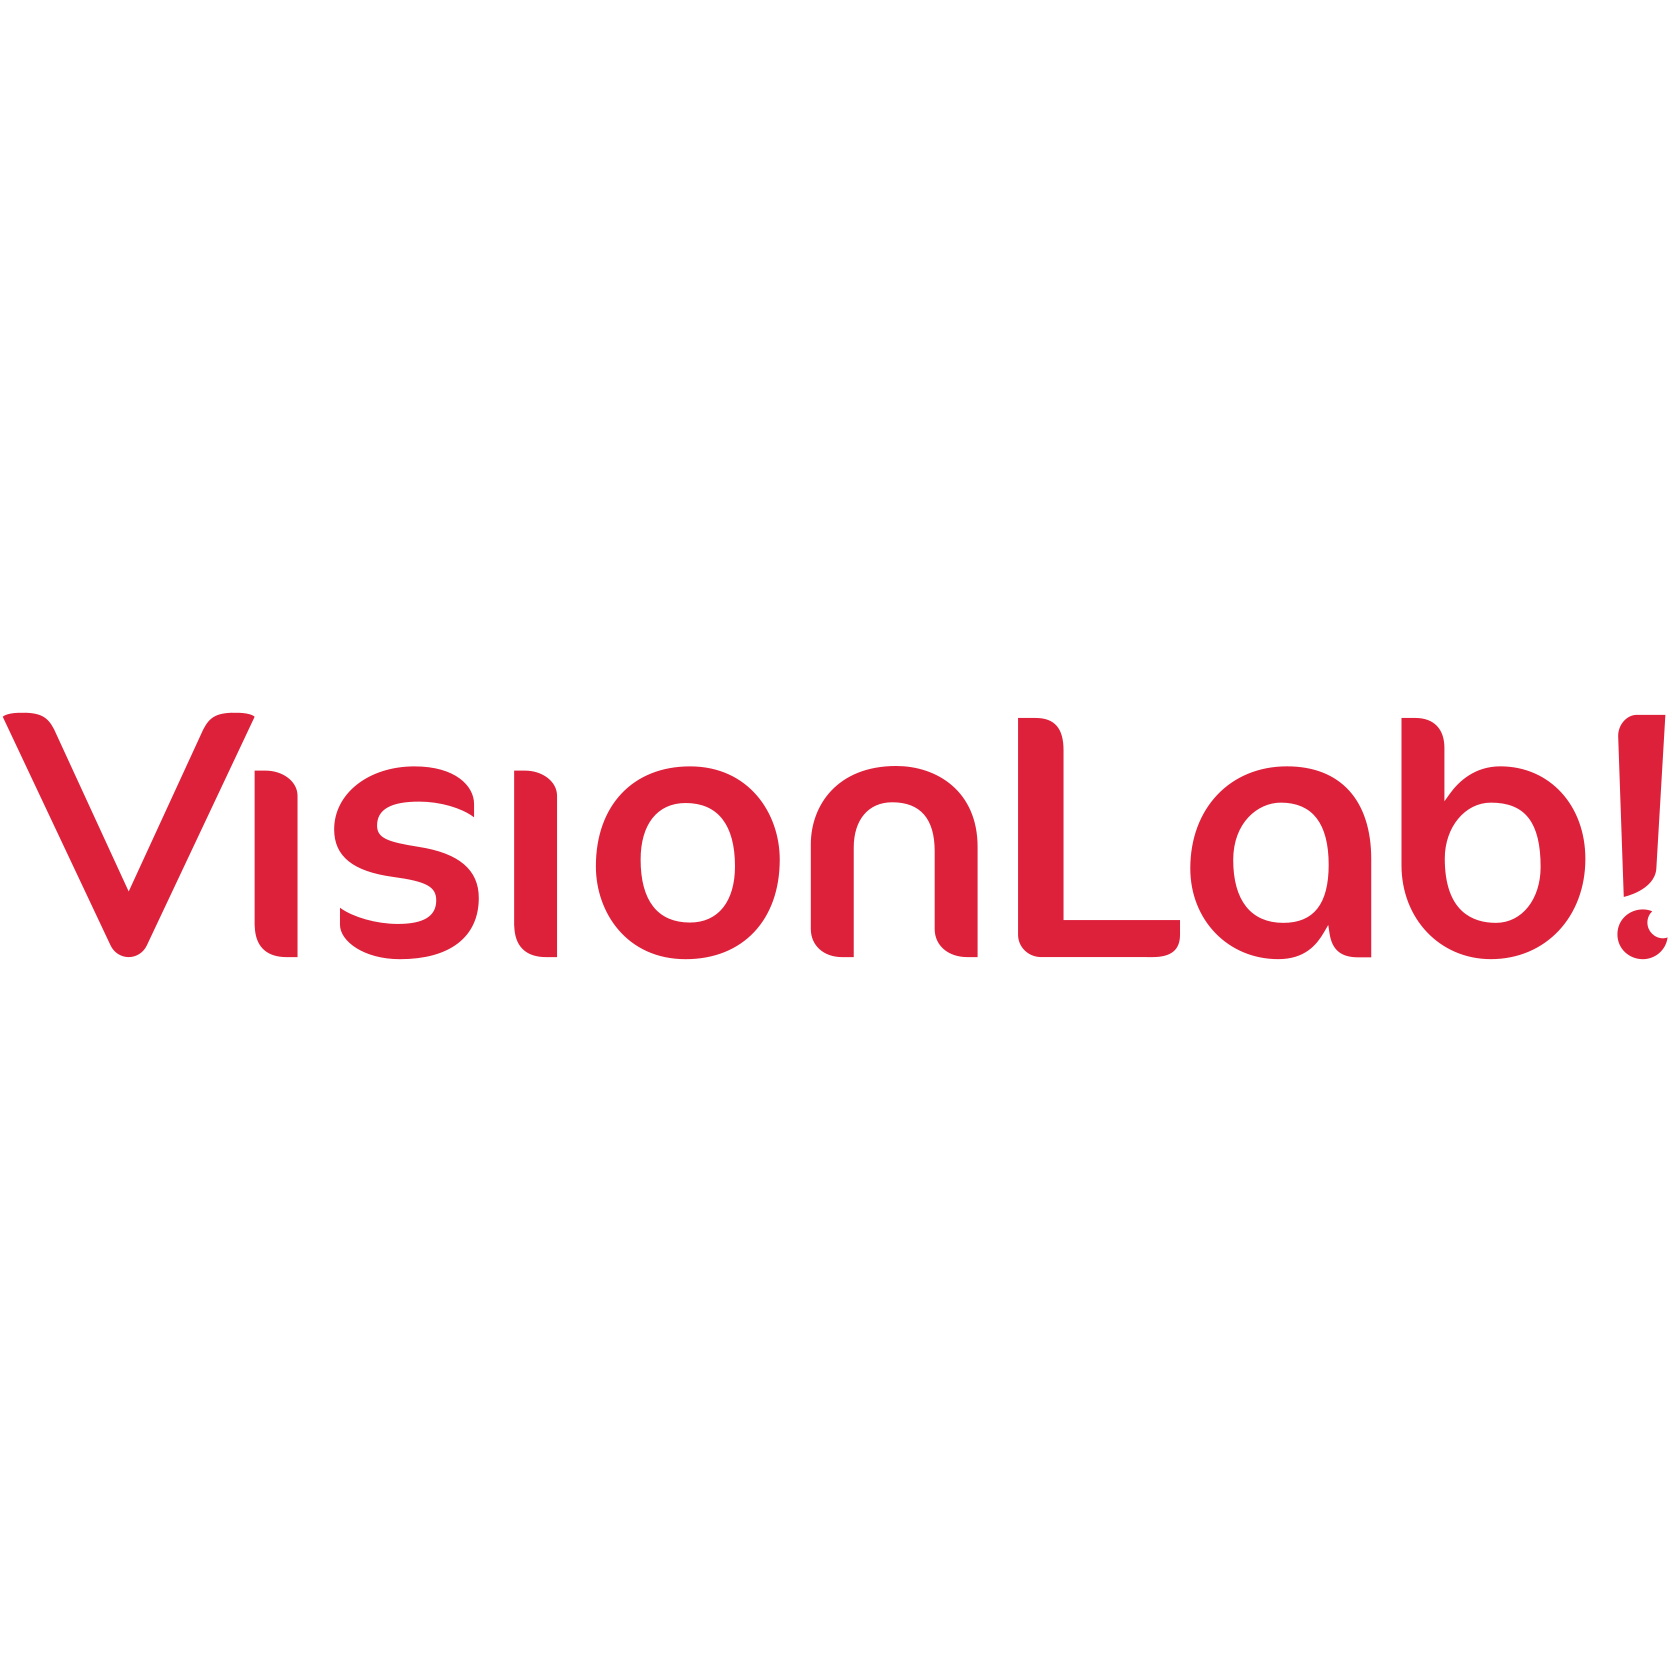 VisionLab! Coupons